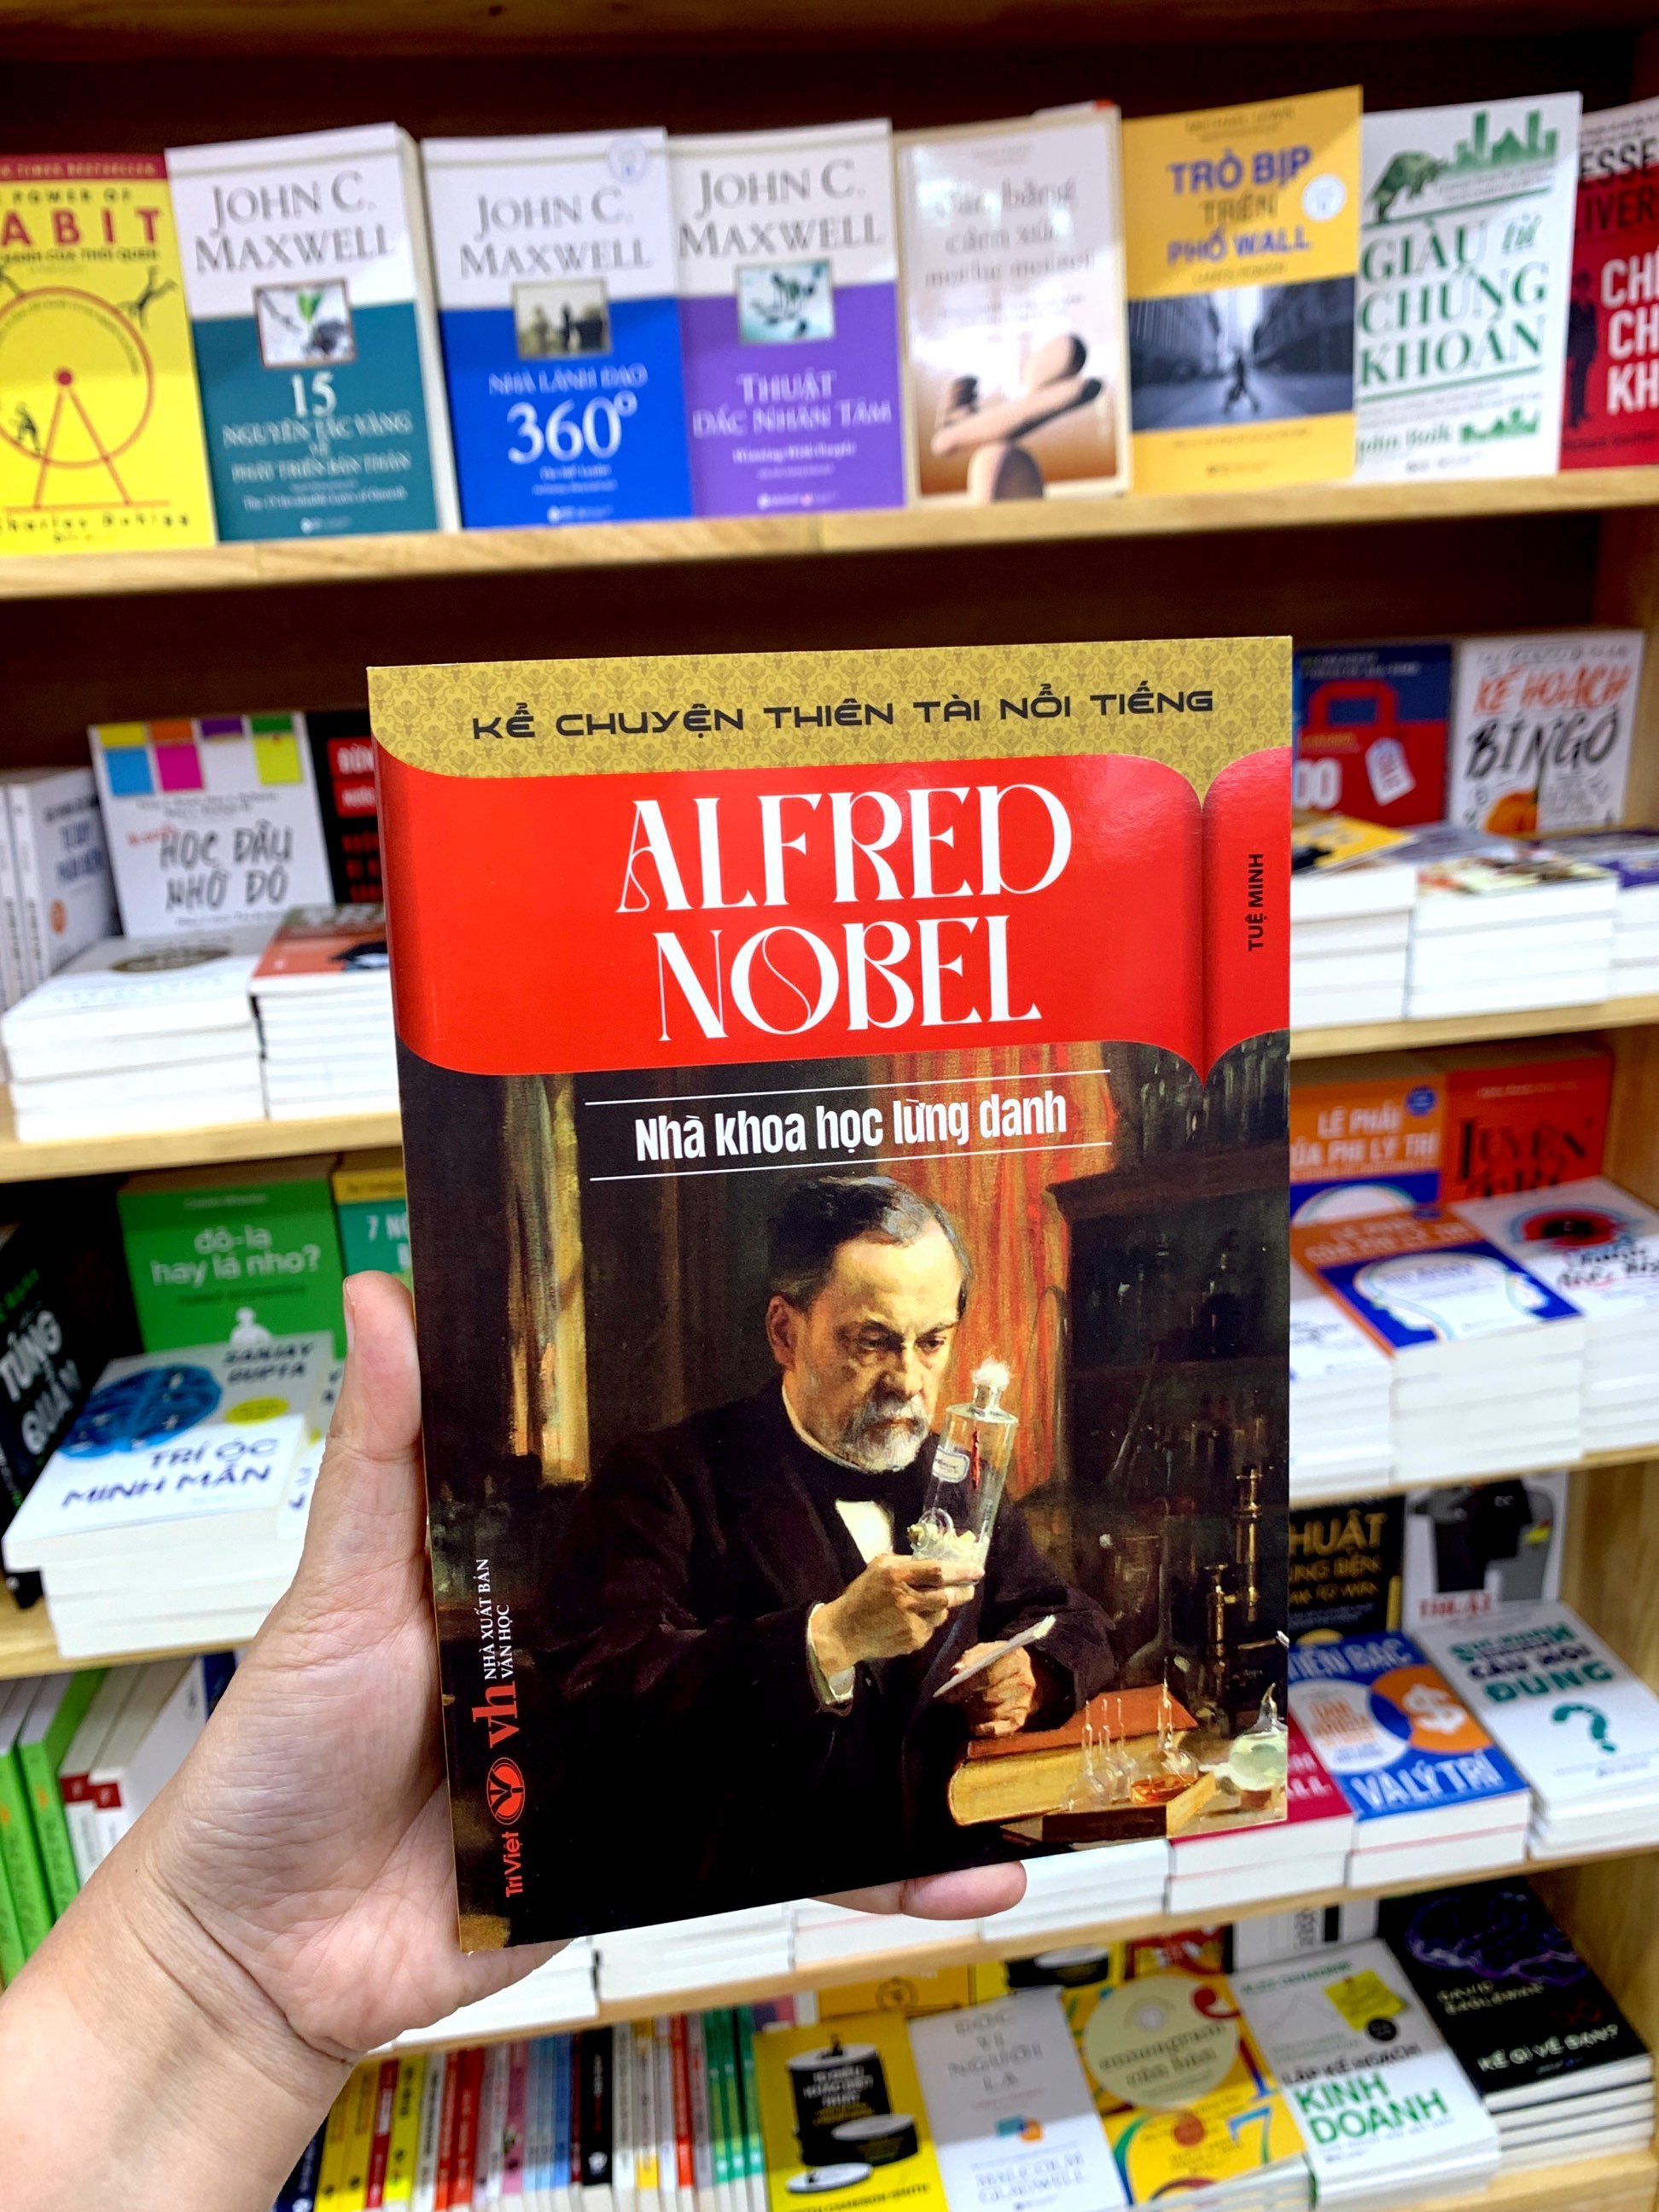 Kể Chuyện Thiên Tài Nổi Tiếng - Alfred Nobel - Nhà Khoa Học Lừng Danh PDF